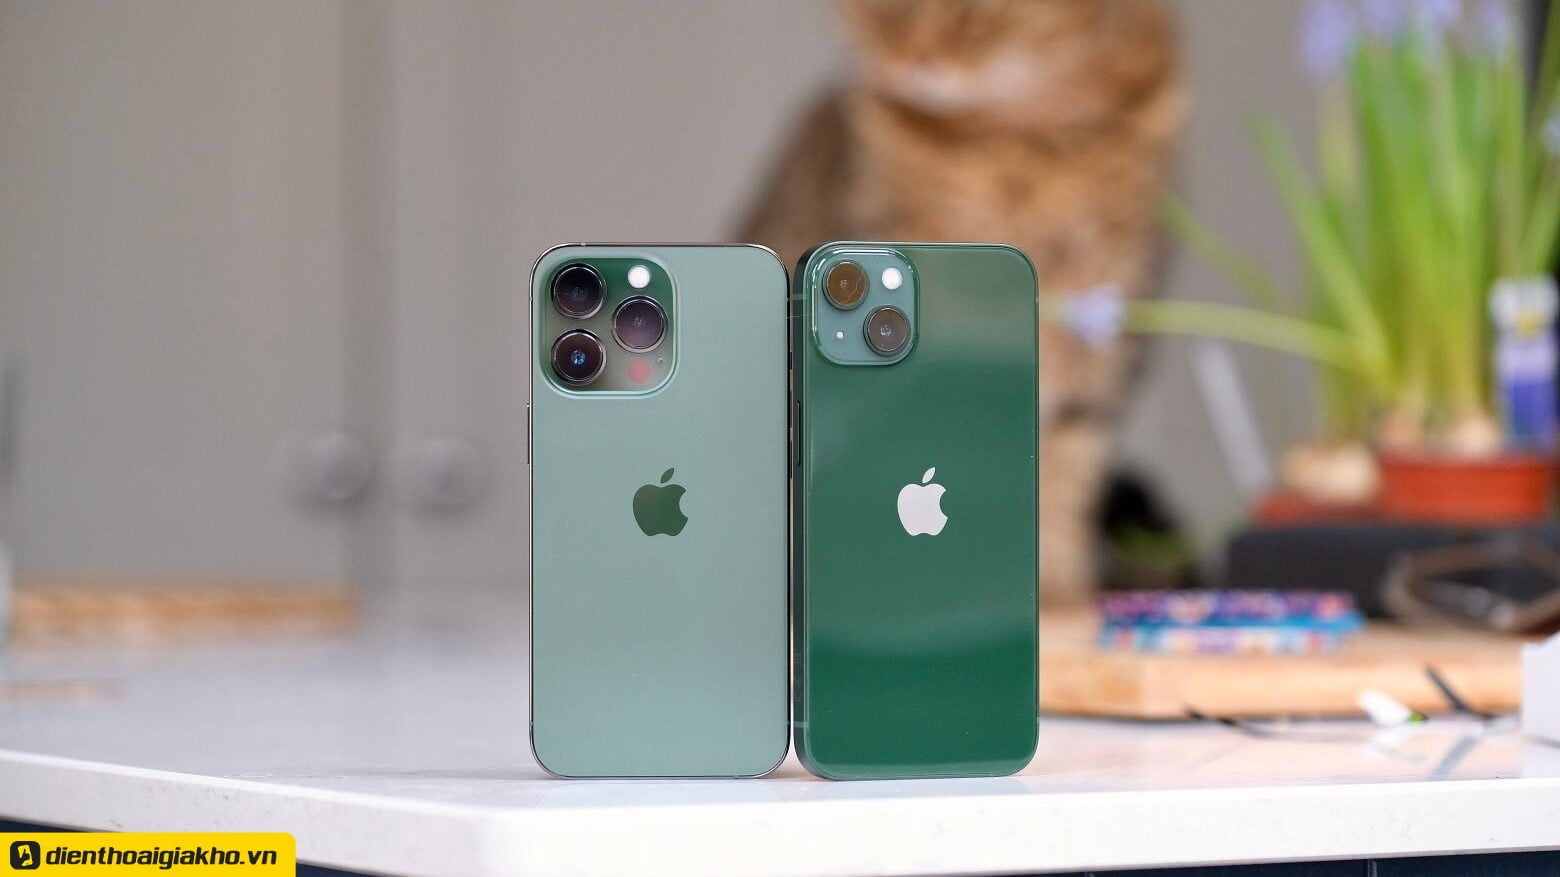 iPhone 13 sẽ có phiên bản màu xanh lá cây; và iPhone 13 Pro sẽ có màu xanh lục núi cao (dịch thô: Alpine green). Phiên bản Alpine Blue đậm hơn một chút so với màu xanh lá cây và gợi lên sự hài hòa với thiên nhiên và cây cối  trong thiết kế của dòng iPhone 13 Pro. 